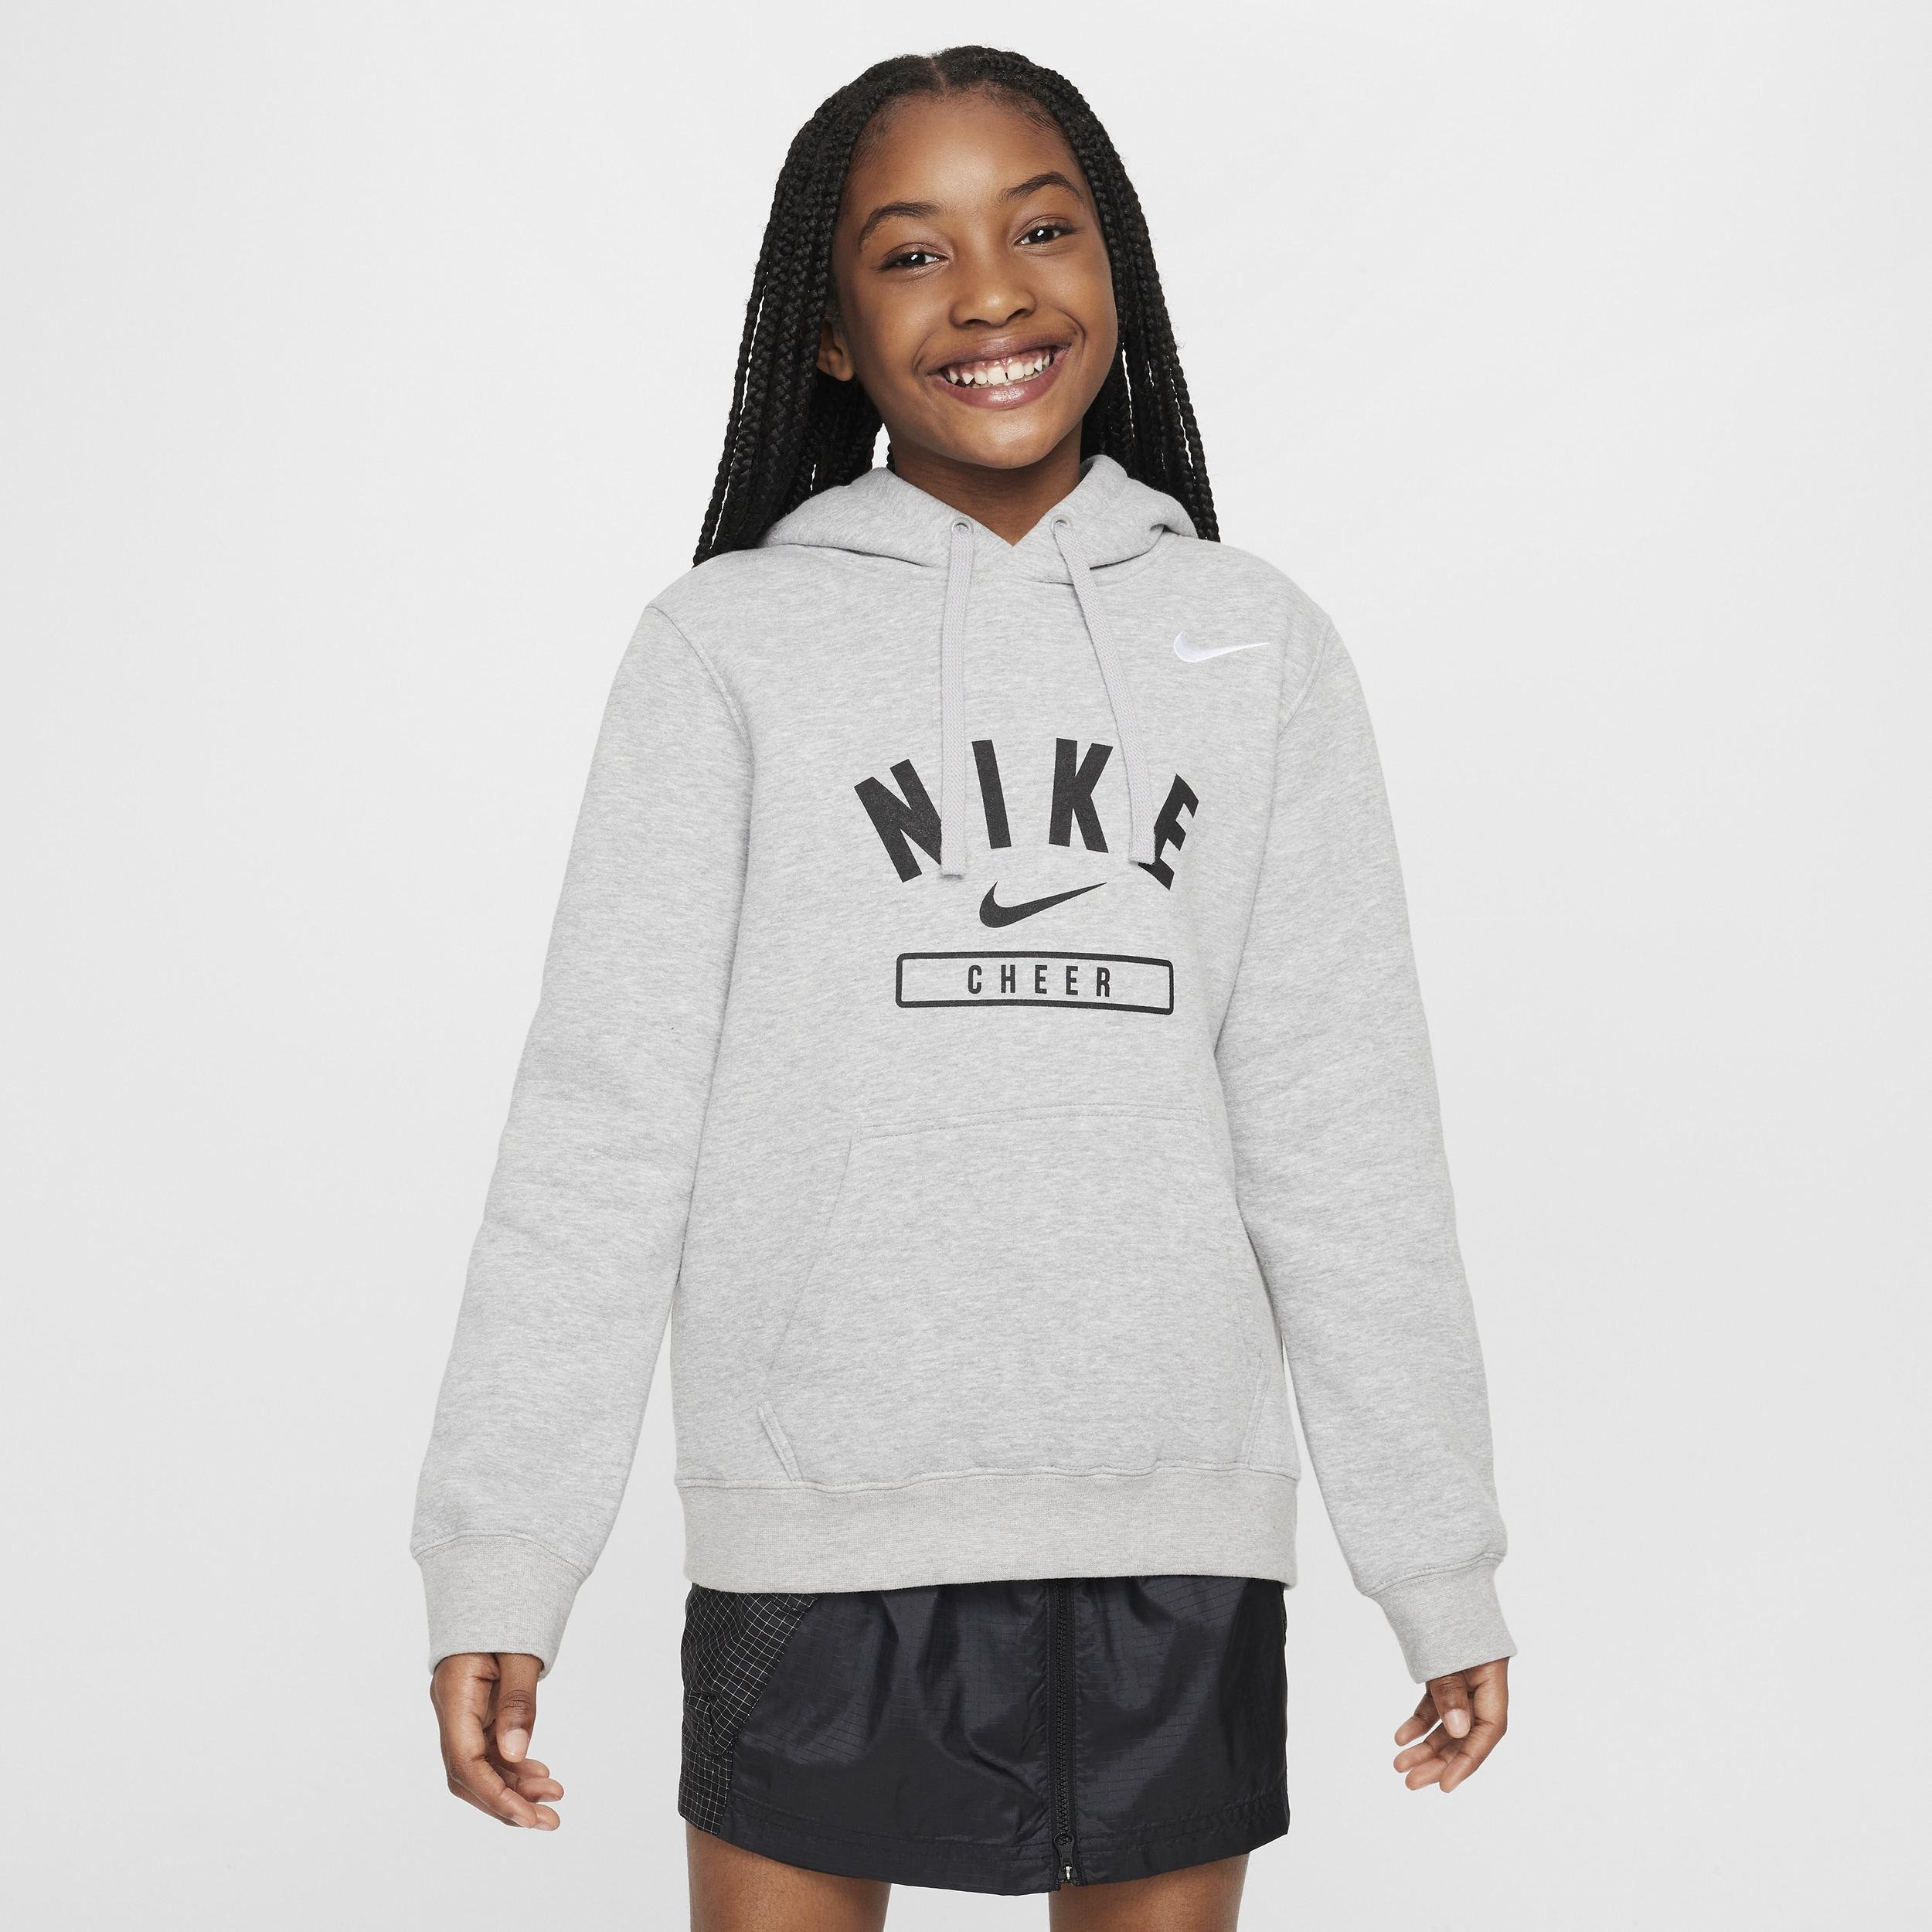 Nike Big Kids' (Girls') Cheer Pullover Hoodie by NIKE